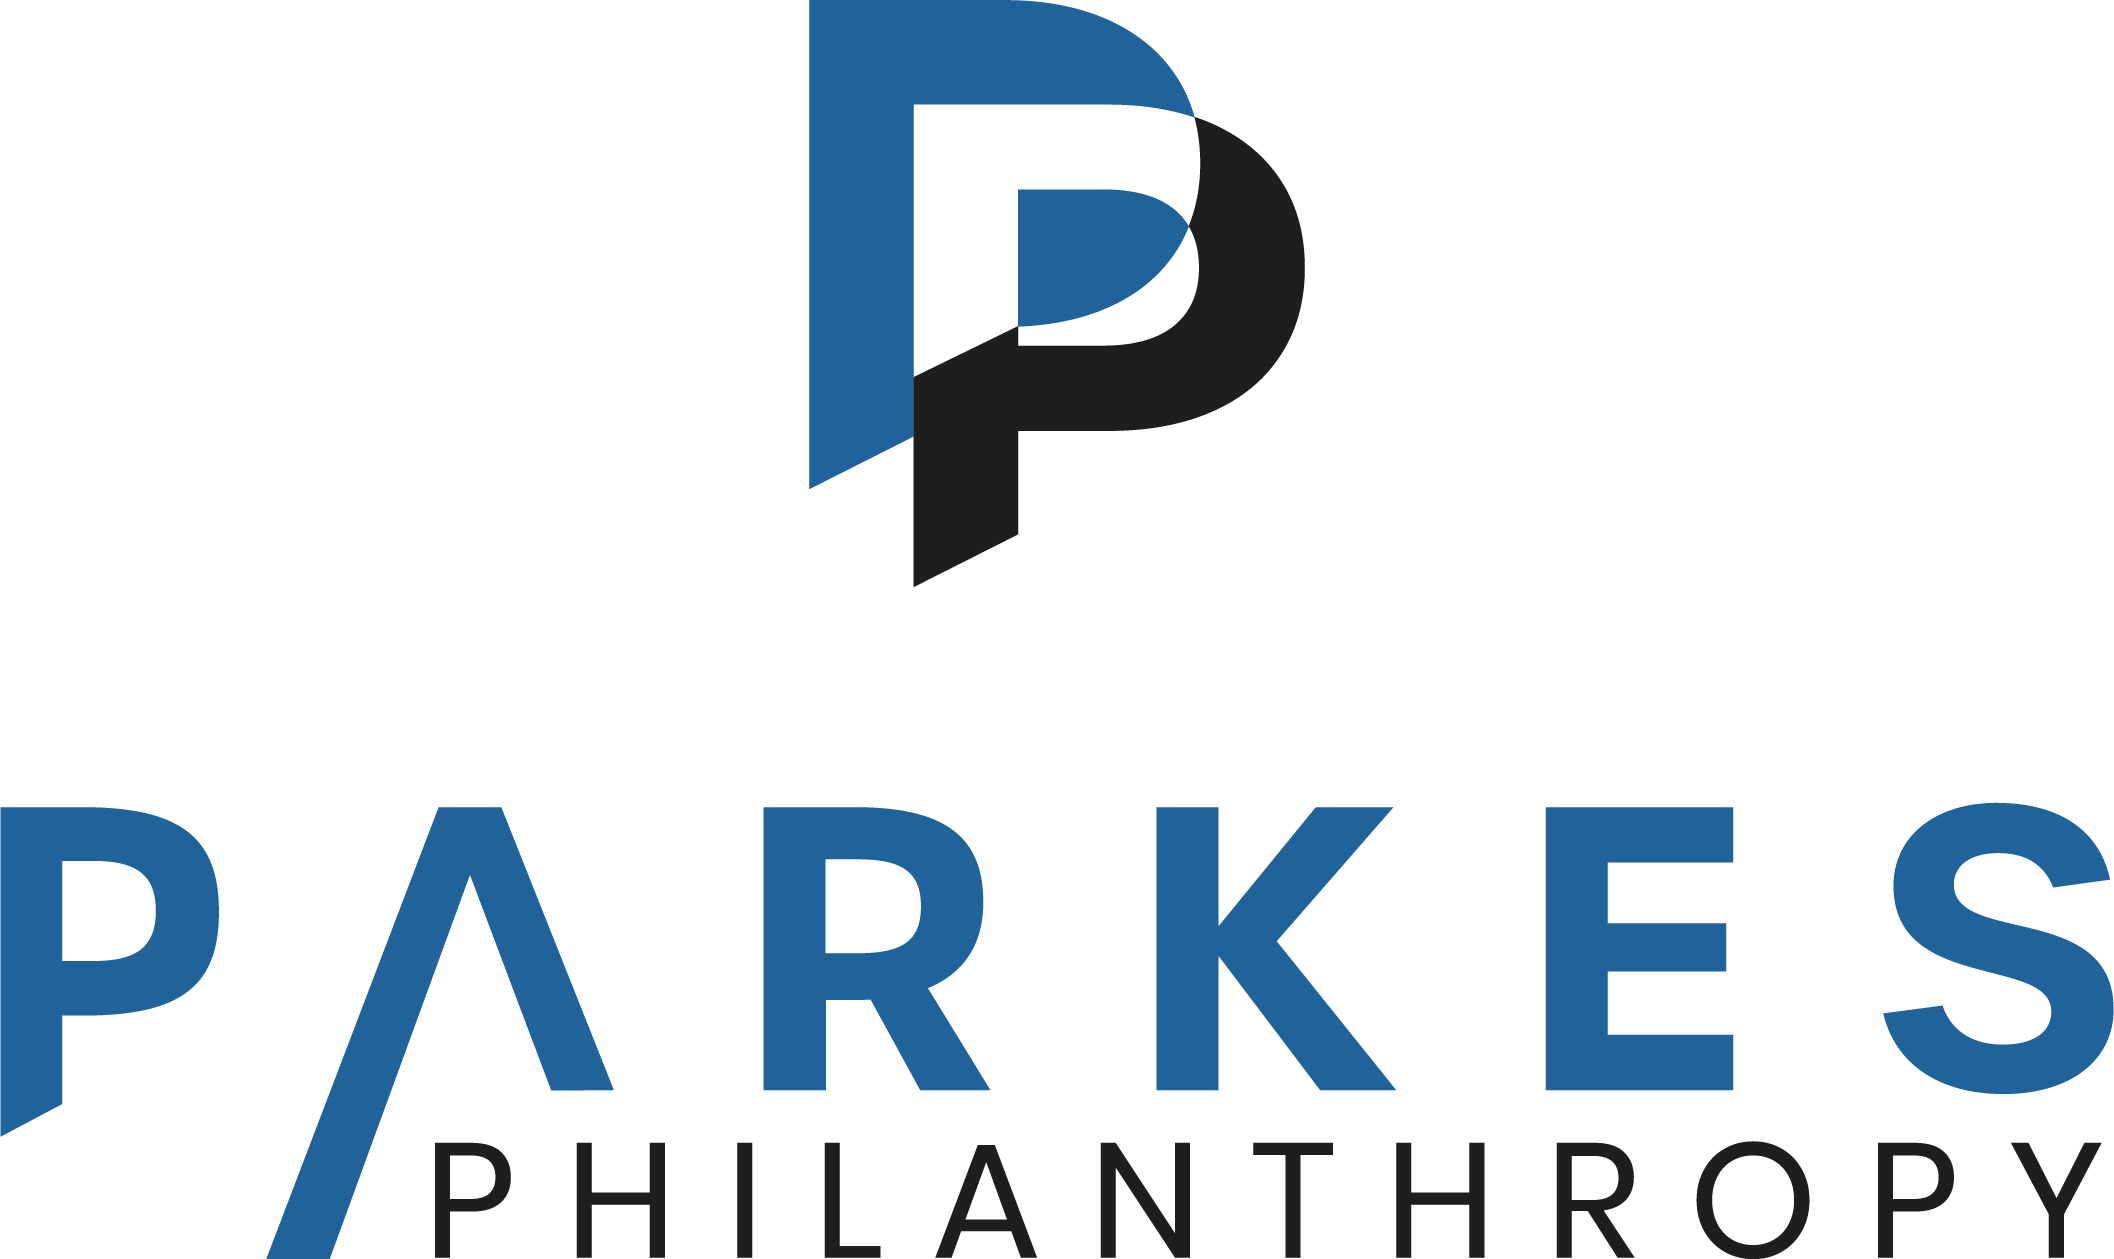 Parkes Philanthropy